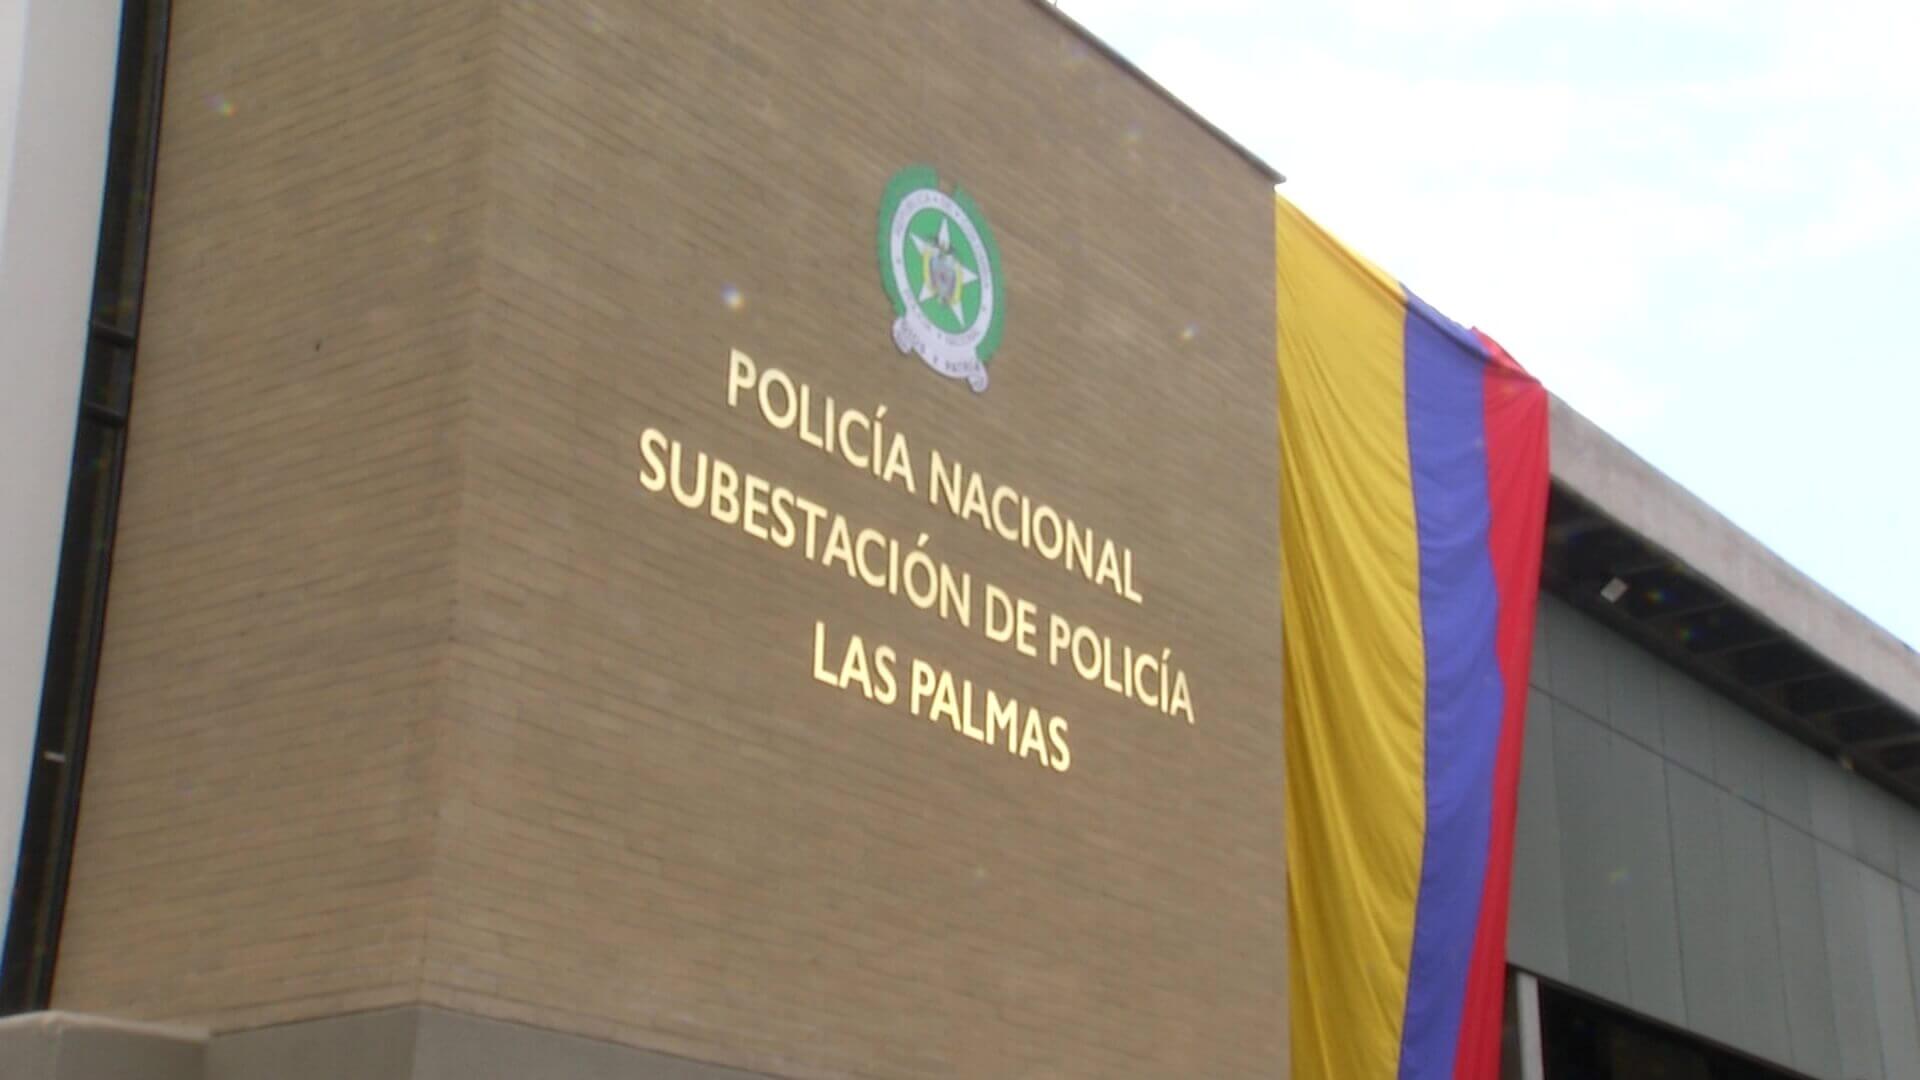 Nueva subestación de Policía para Las Palmas